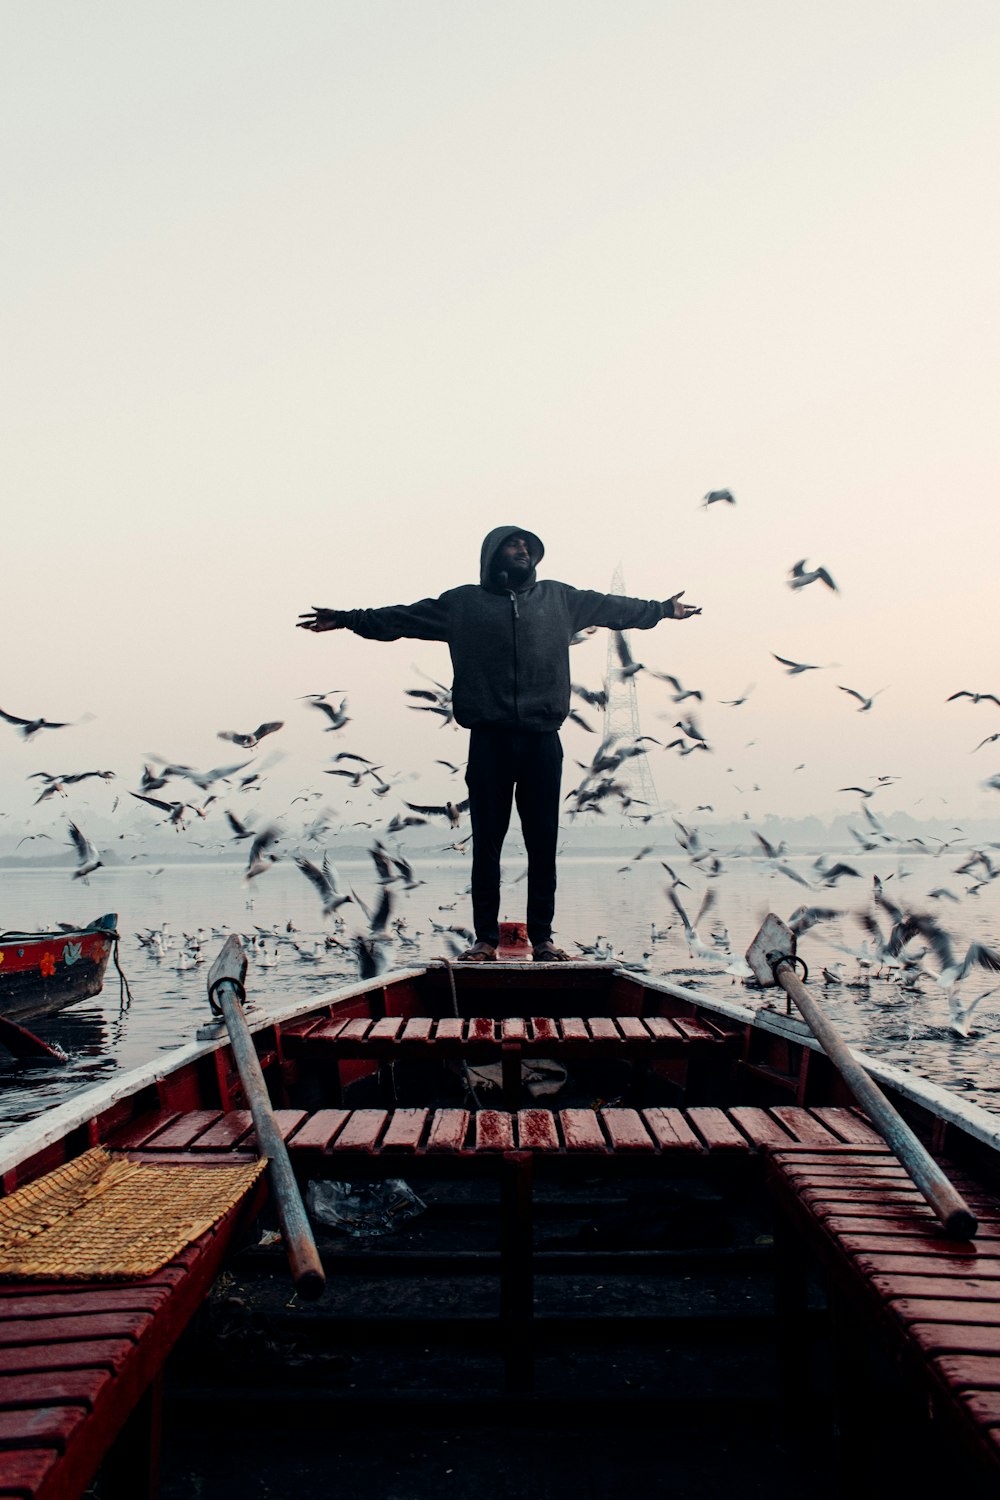 Un hombre parado en la parte superior de un bote rodeado de pájaros